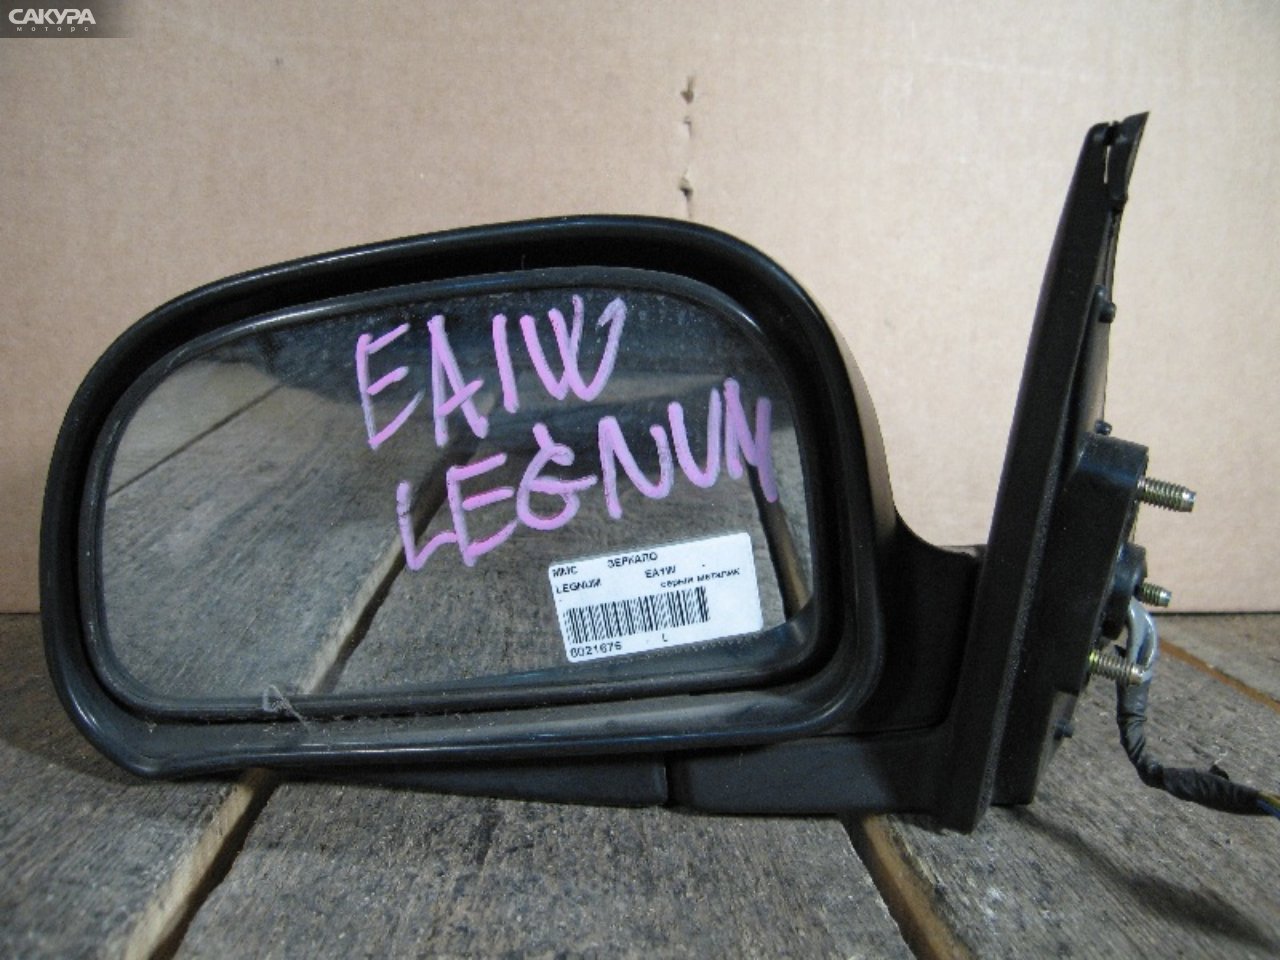 Зеркало боковое левое Mitsubishi Legnum EA1W: купить в Сакура Абакан.